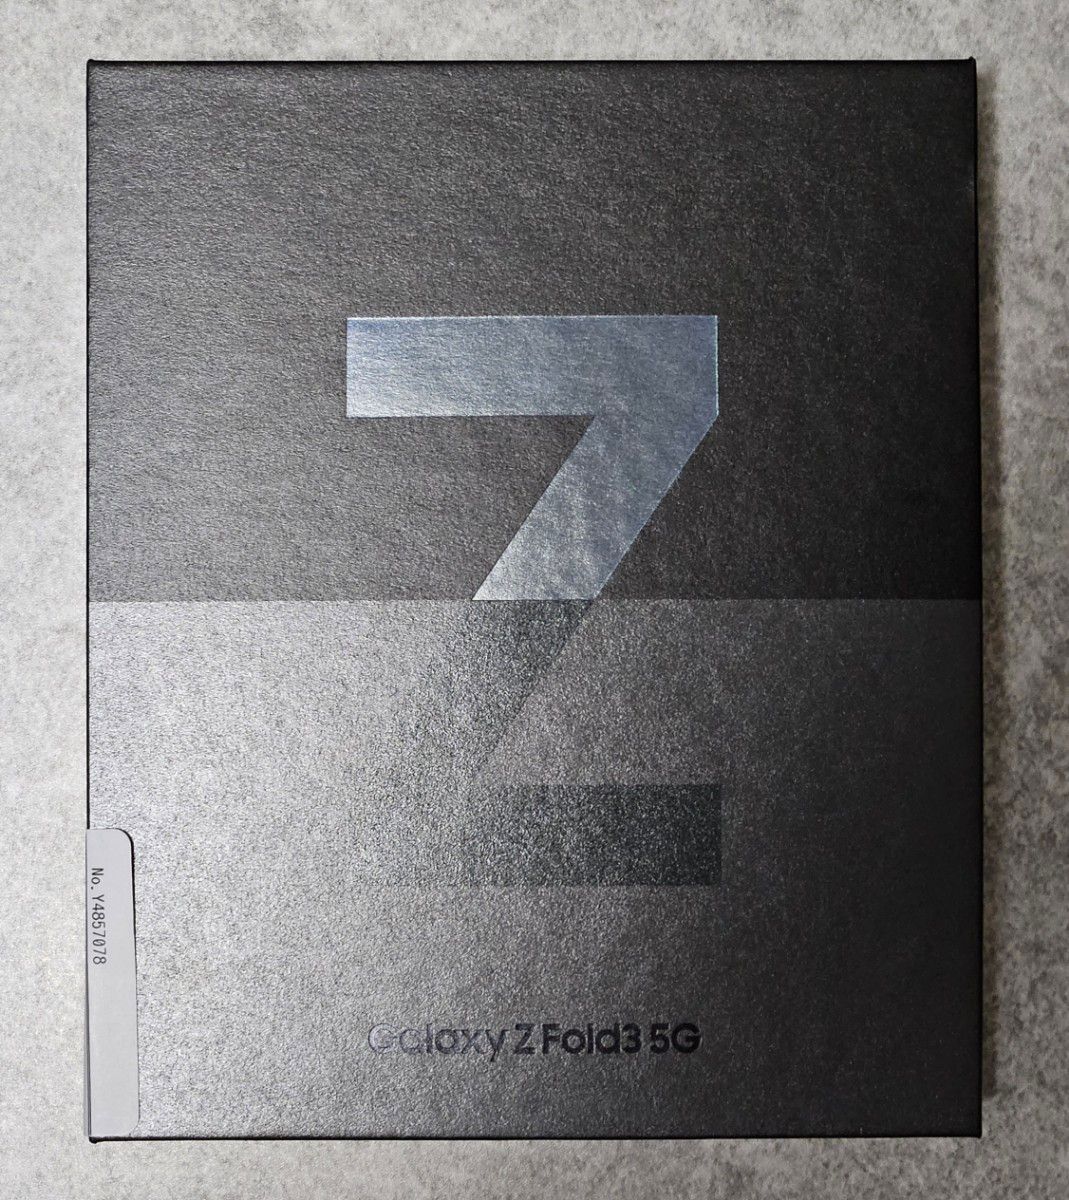 Galaxy Z Fold3 5G GB 日本版au SCG ファントムグリーン｜PayPay